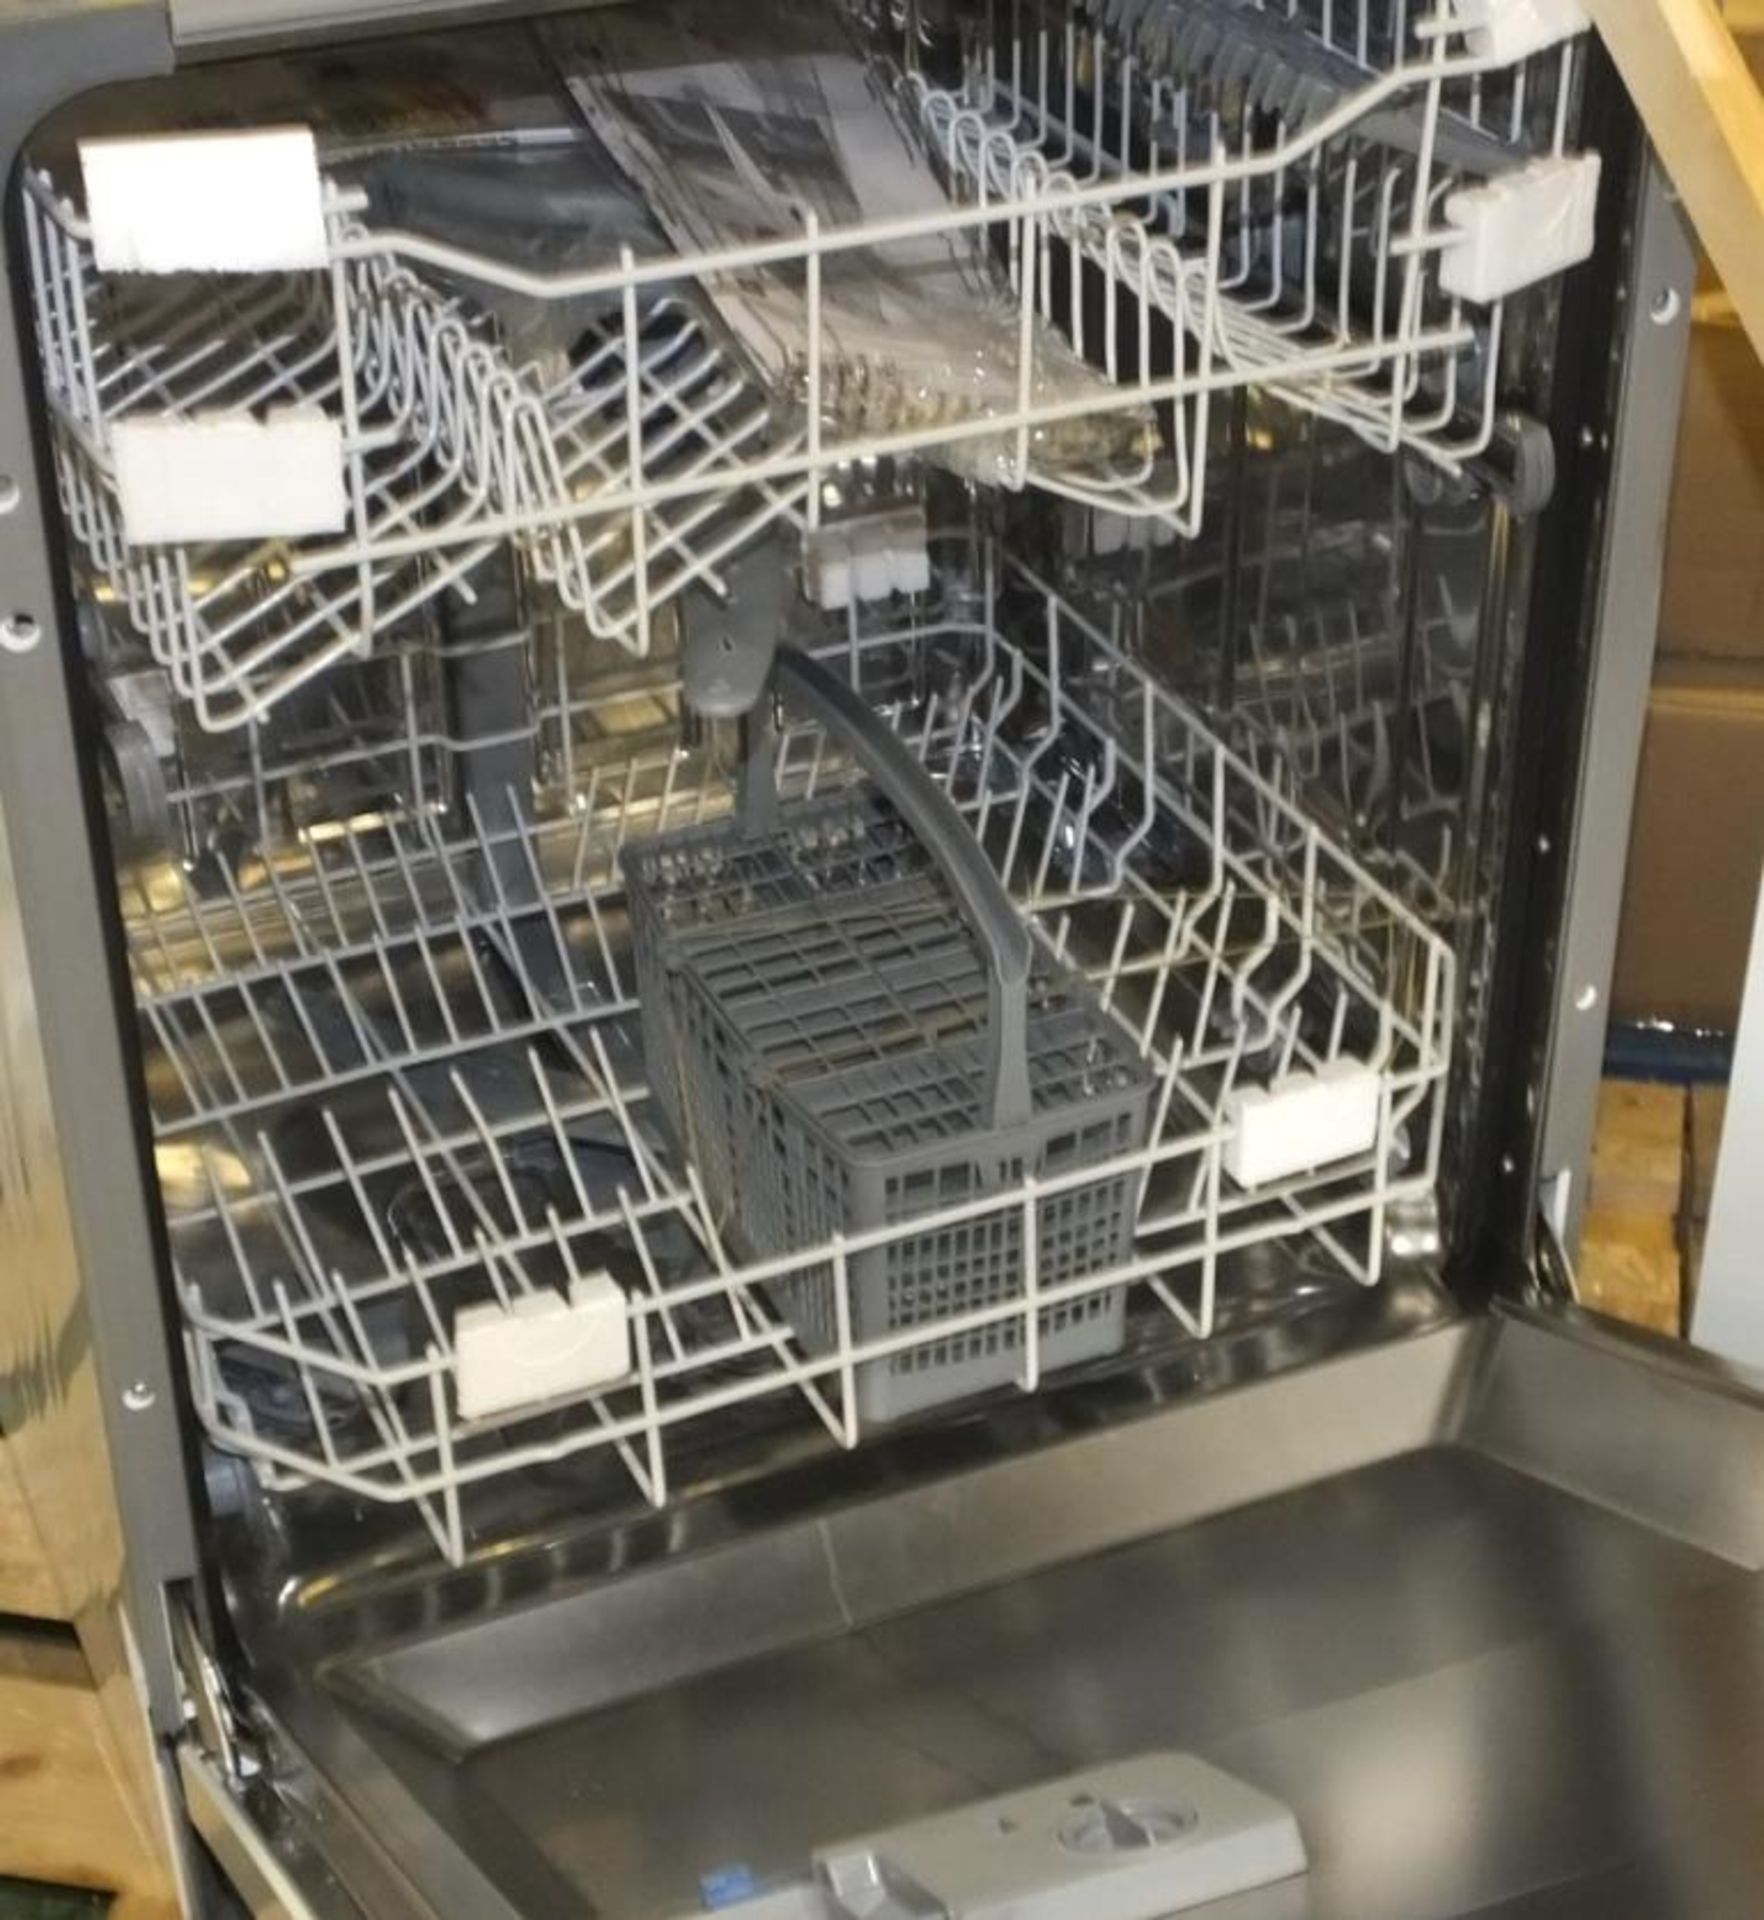 Intergral dishwasher unit - Bild 2 aus 2